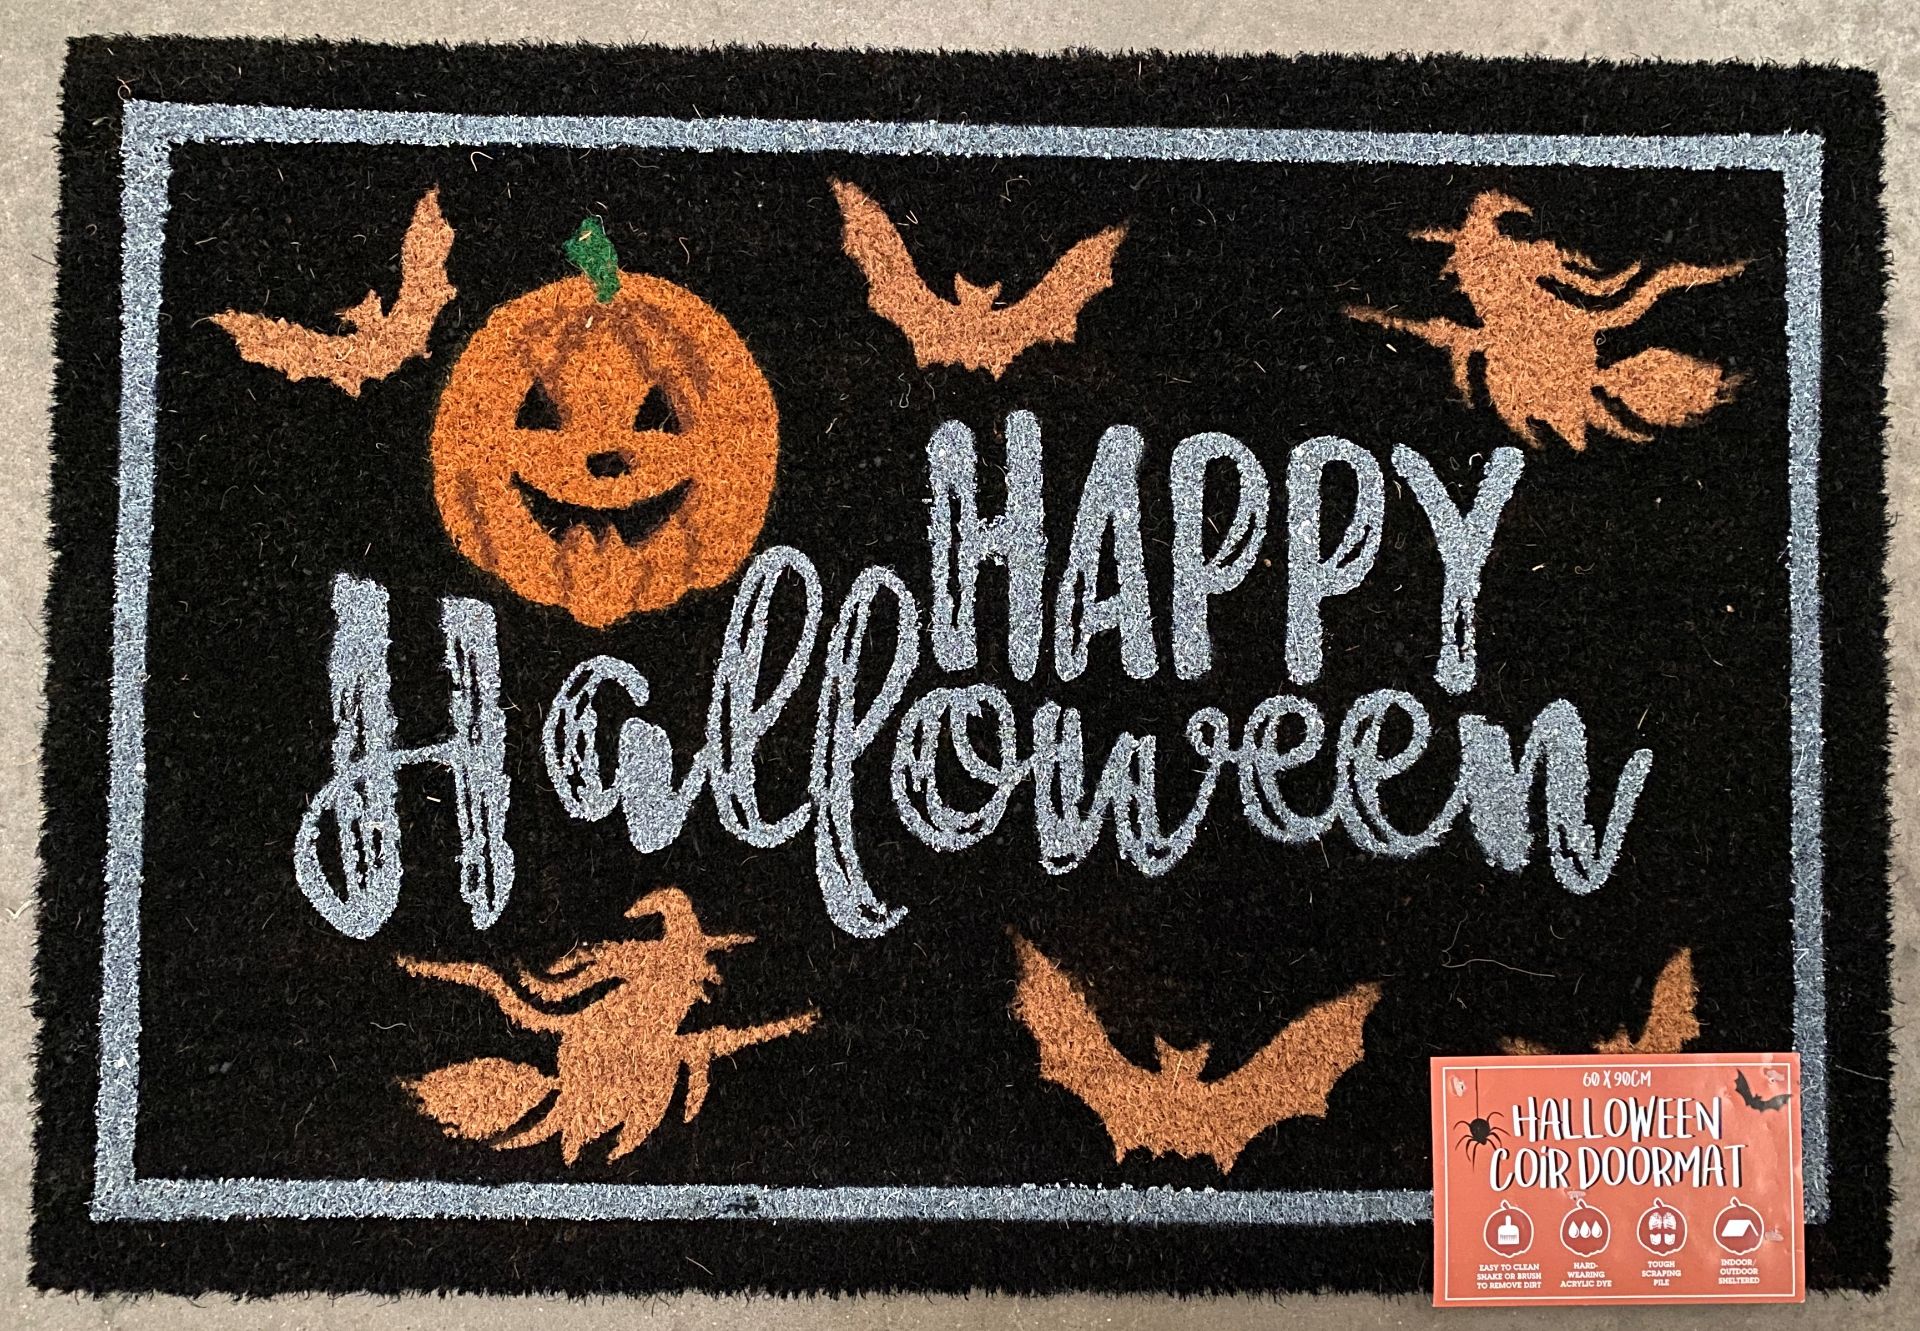 Contents to pallet - 100 x Happy Halloween Premium Coir Extra Large Doormats - 60cm x 90cm